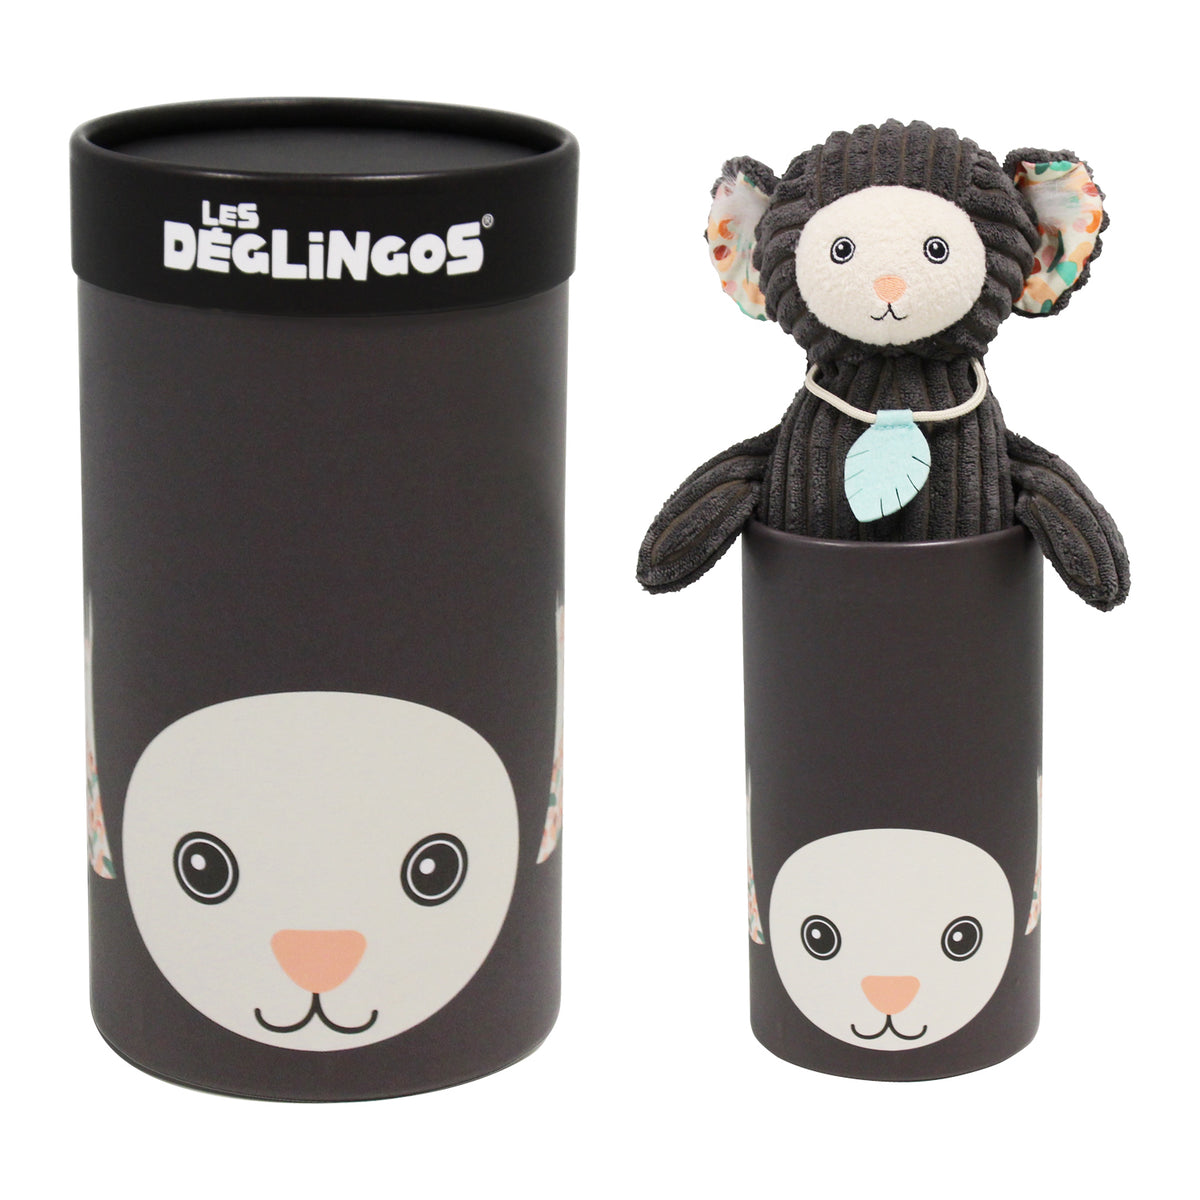 Les Deglingos Spieltier mit Geschenkbox